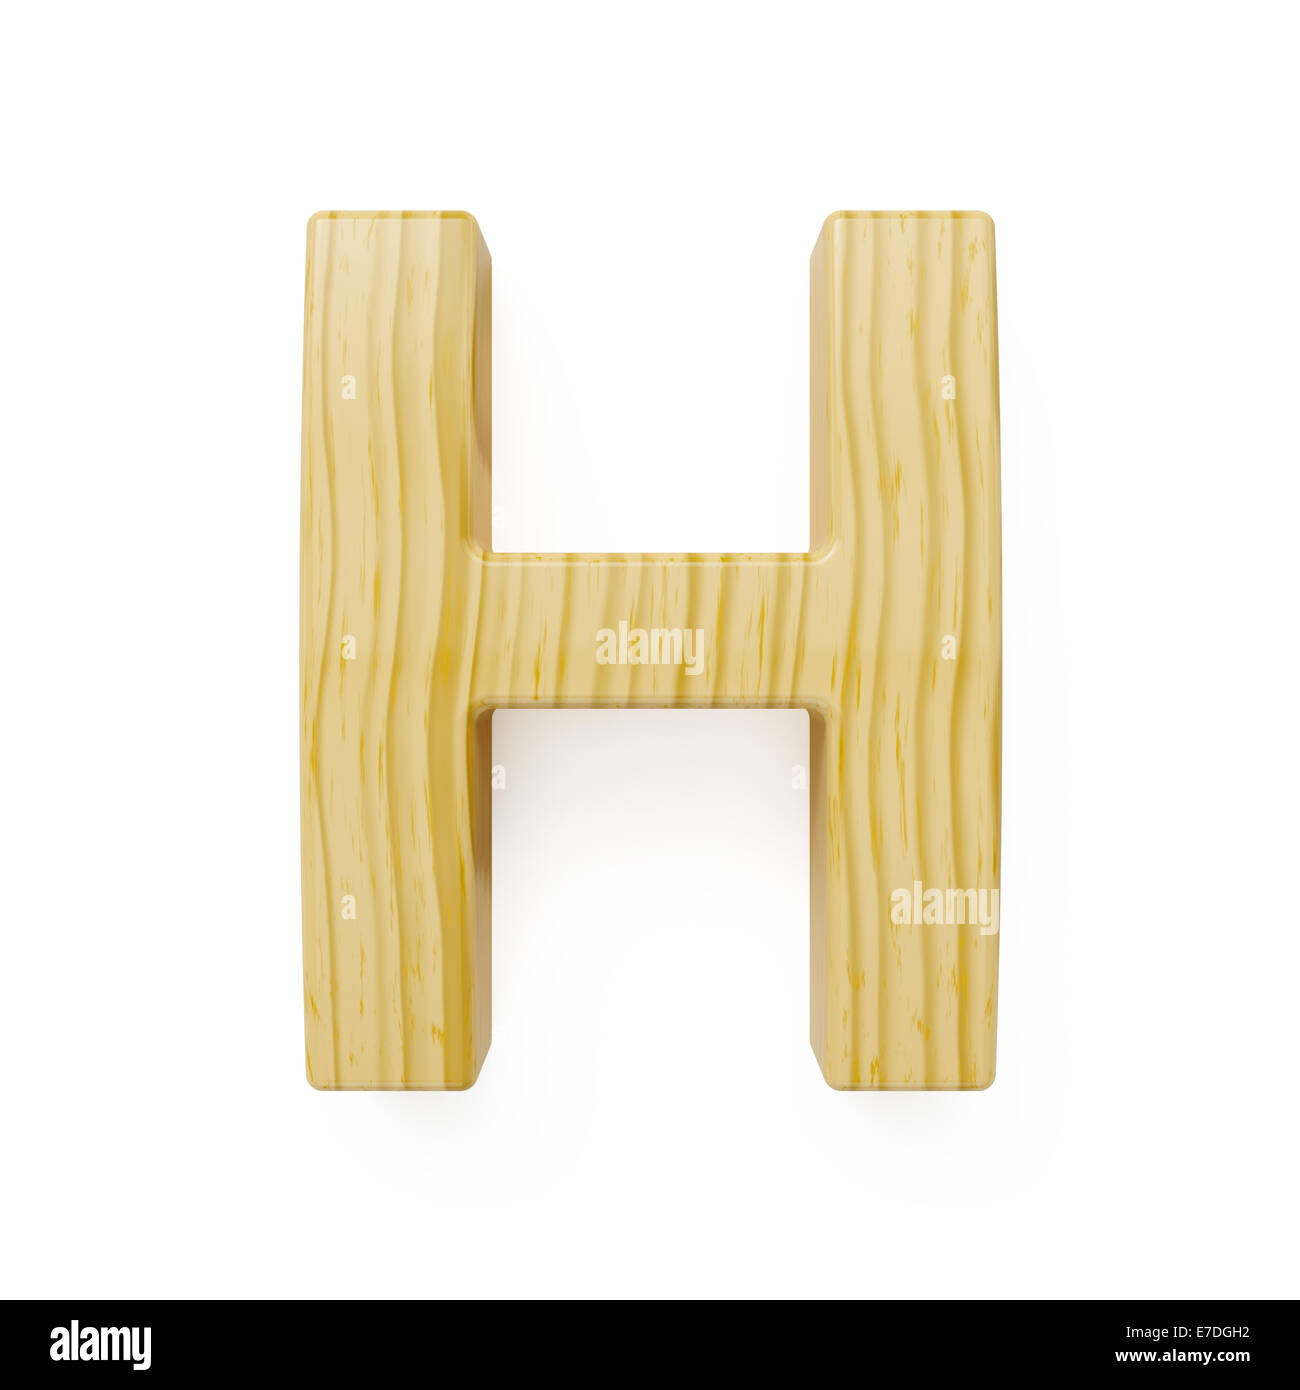 Wood alphabet letter symbol - H. Isolated on white background Stock Photo